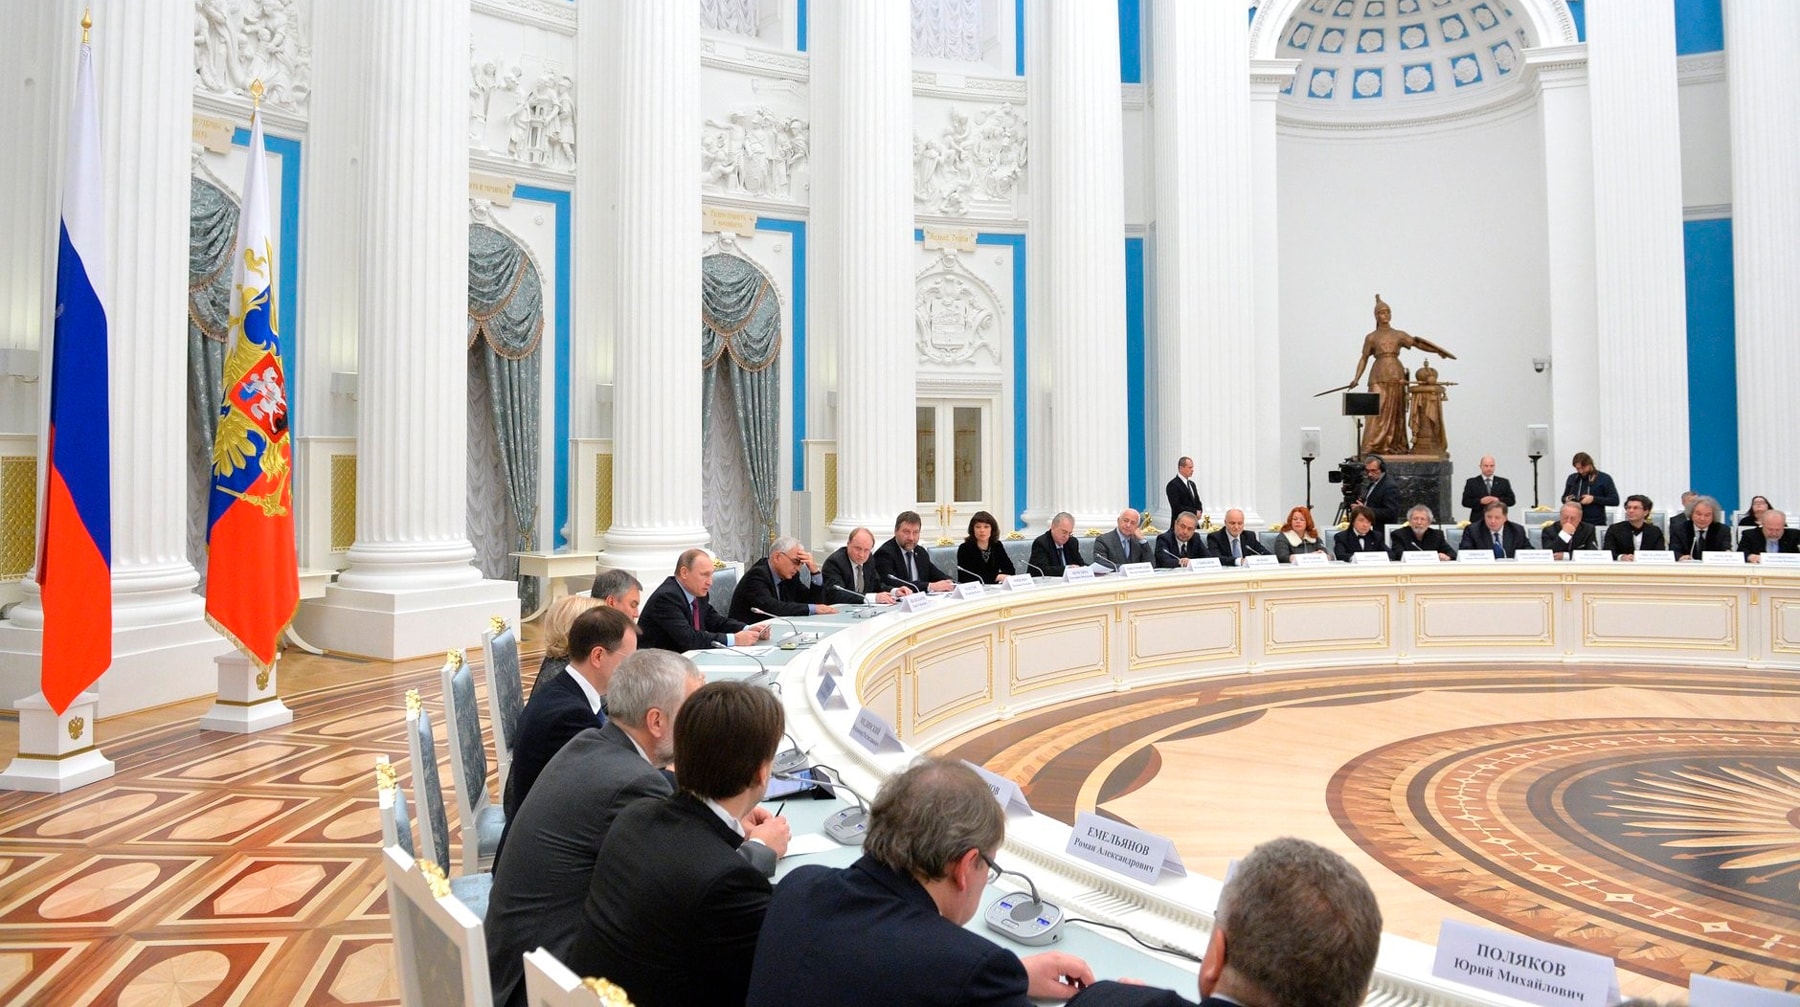 Профессиональные сообщества хотят полномочий Фото: © Пресс-служба Президента России